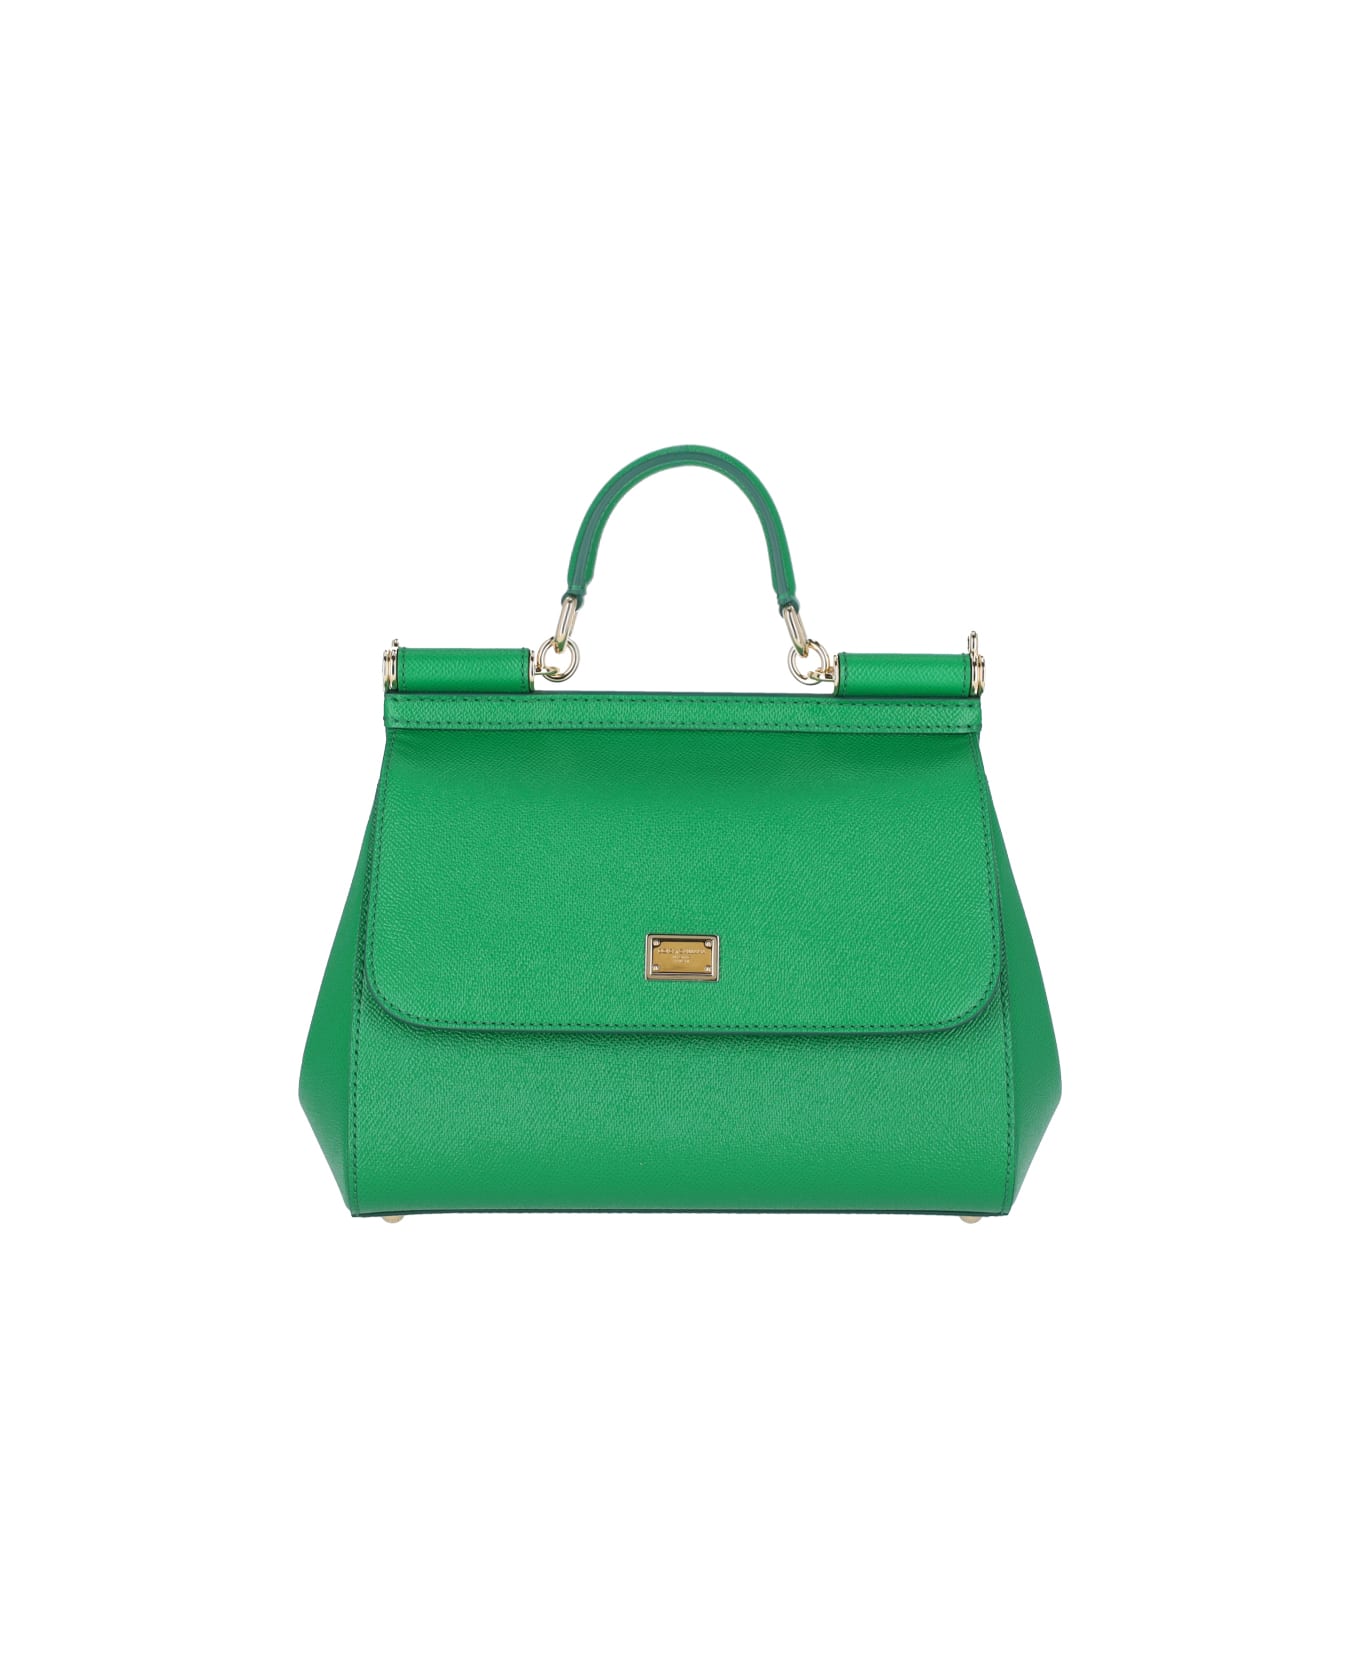 Dolce & Gabbana Sicily Bag - Green